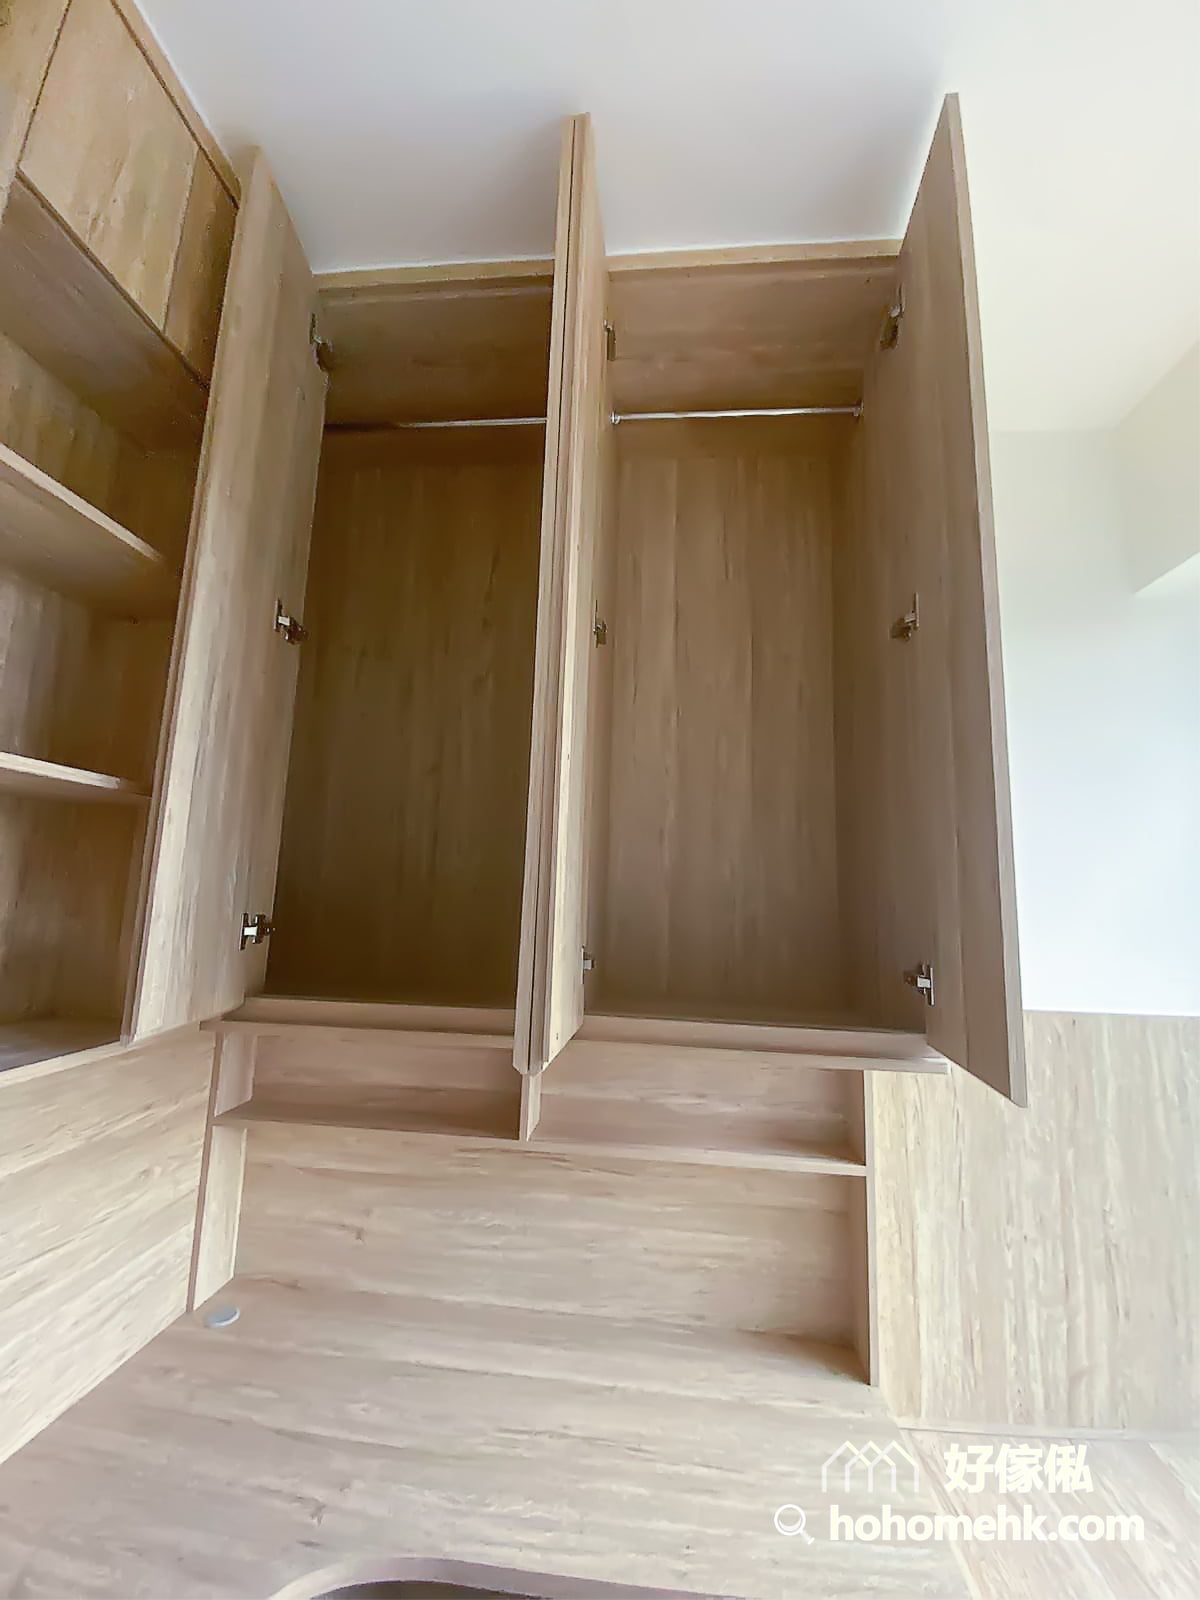 睡房的地台床連書櫃衣櫃連成一體, 提供足夠的收納機能又美觀